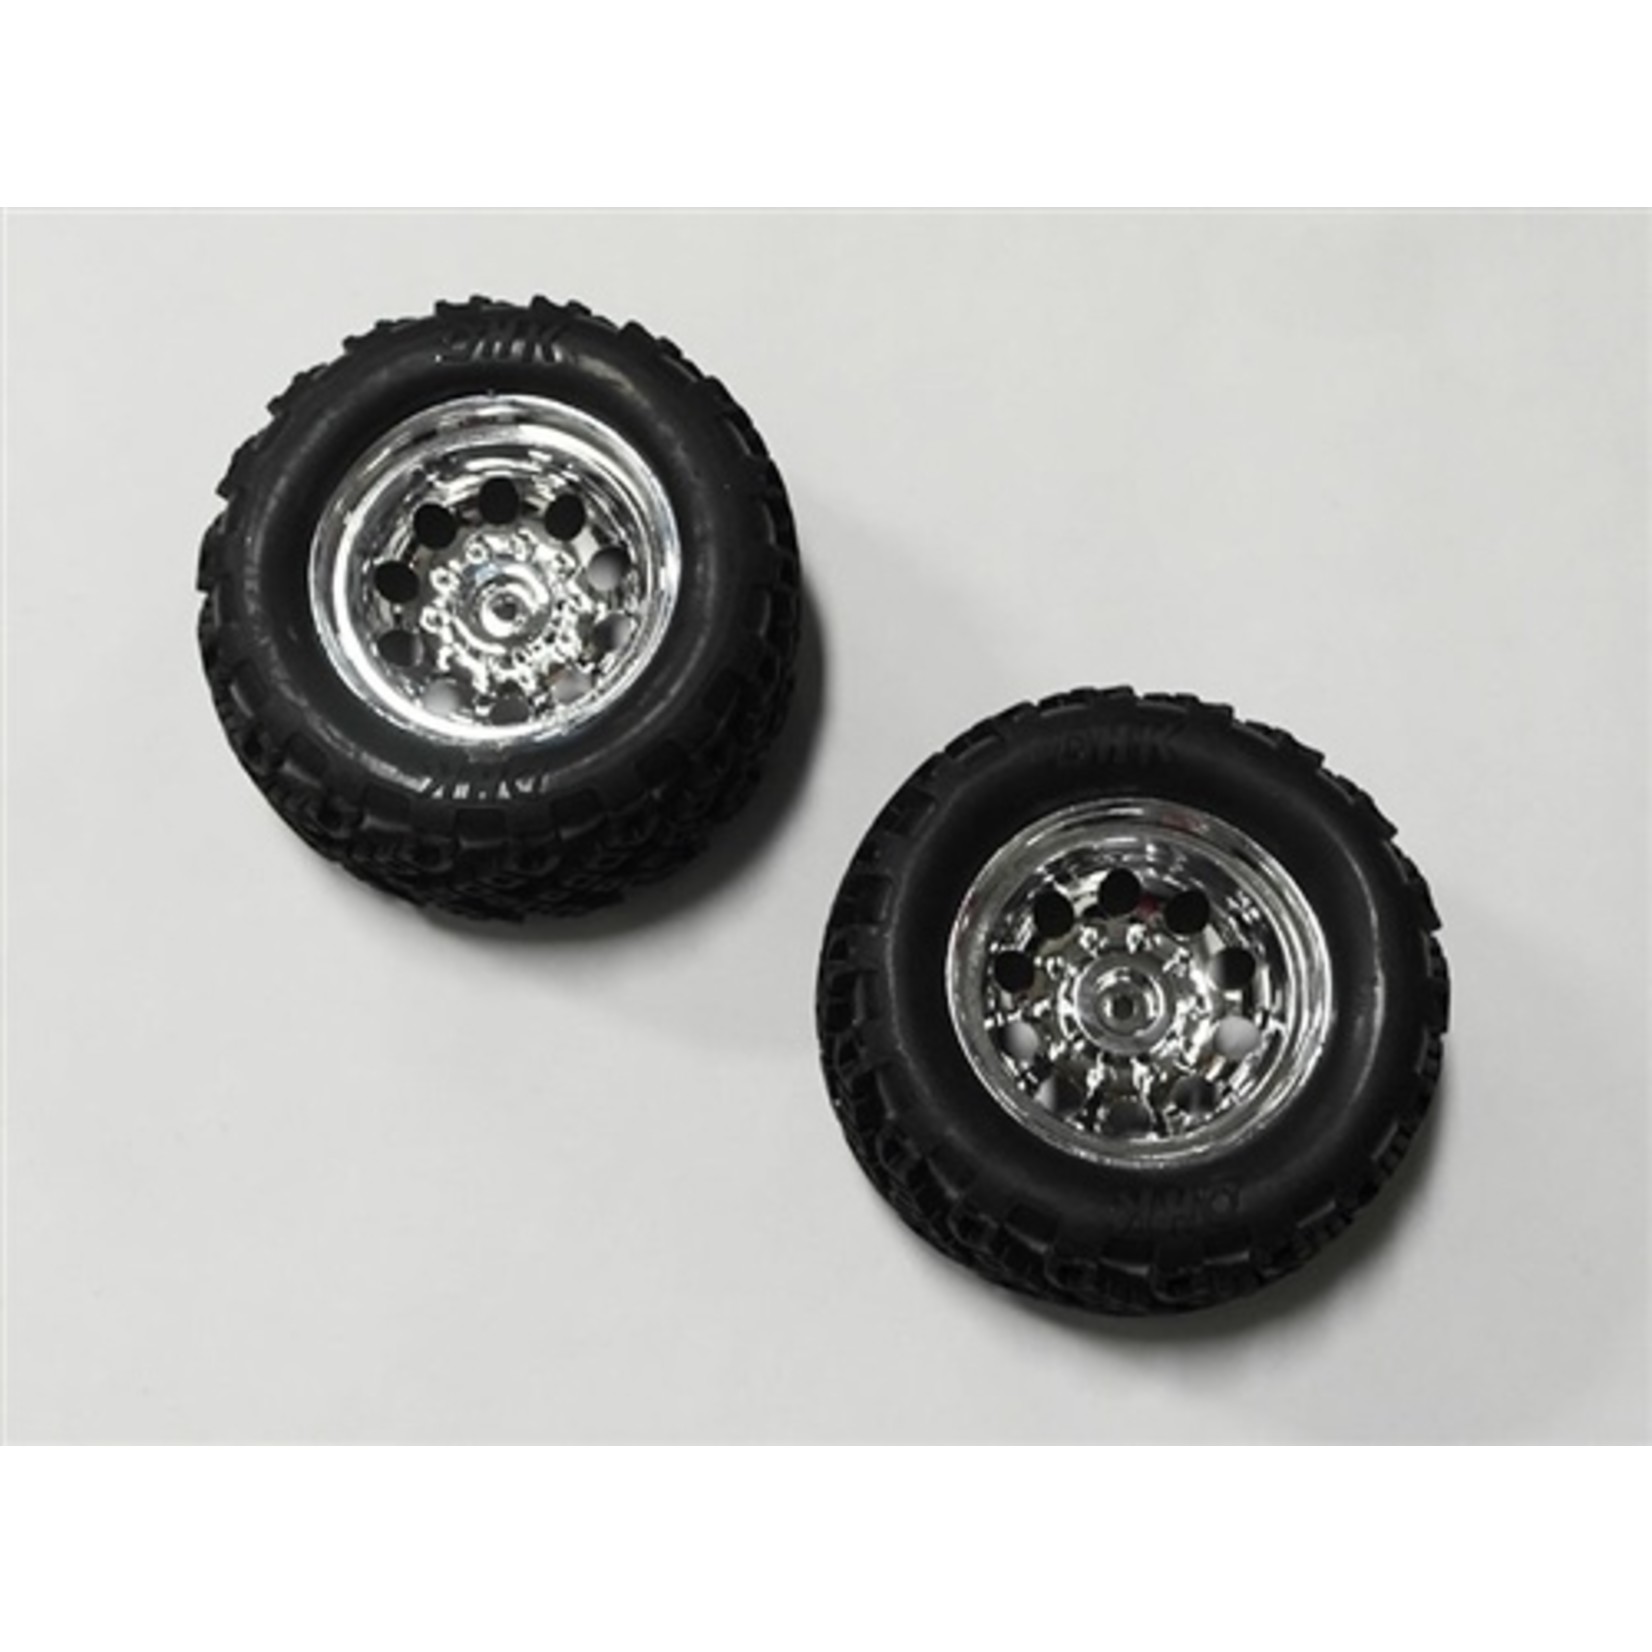 DHK Hobby Tire Complete (Chrome Wheels) (2) - Crosse Brushless